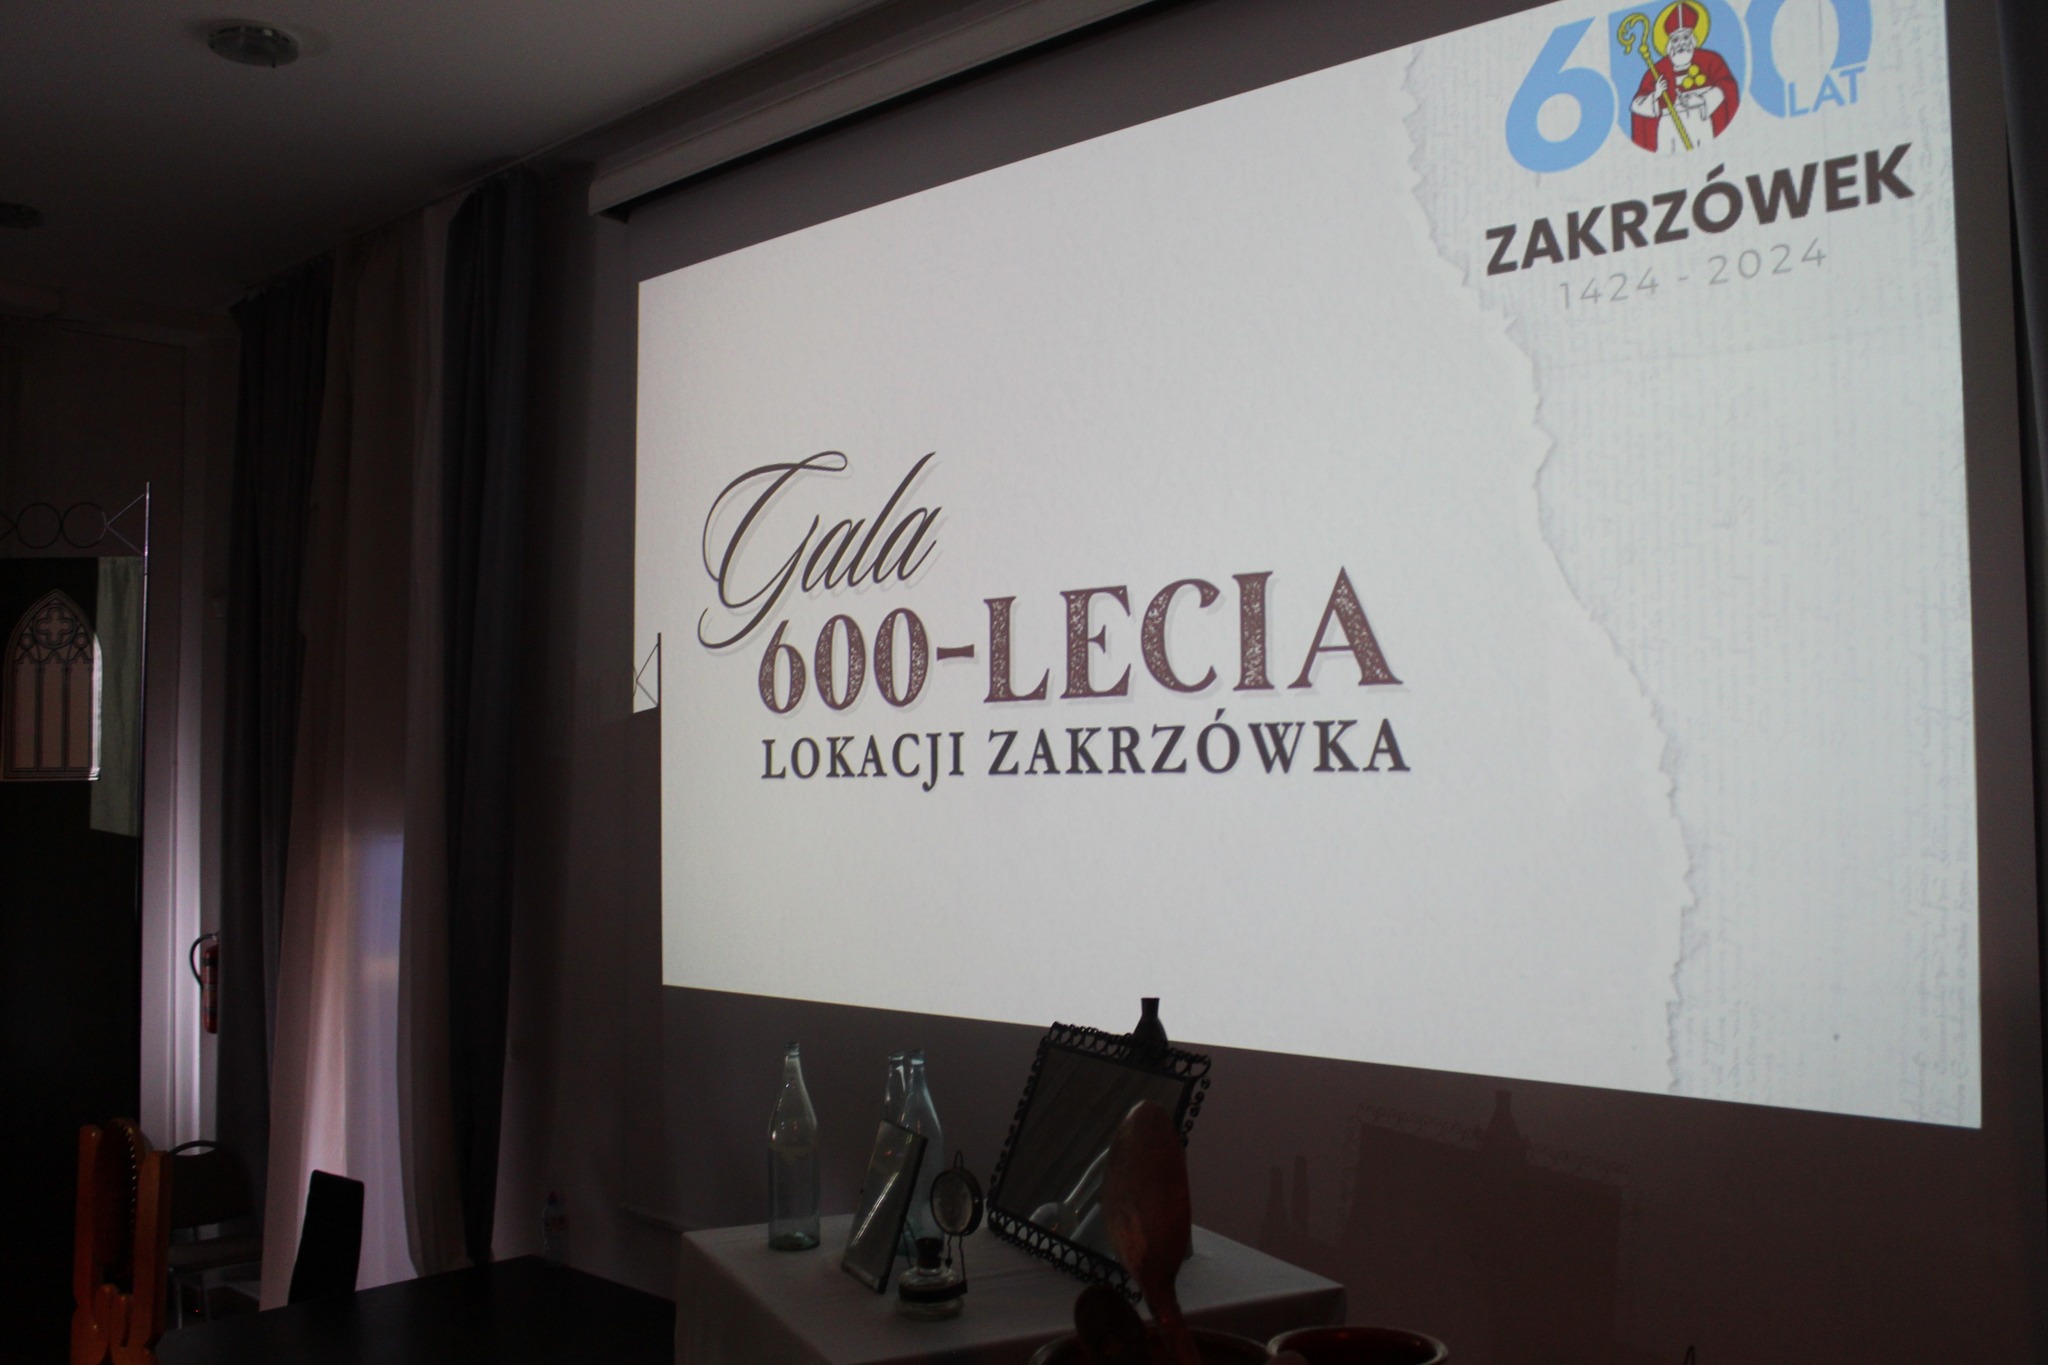 Gala 600-lecia lokacji Zakrzówka